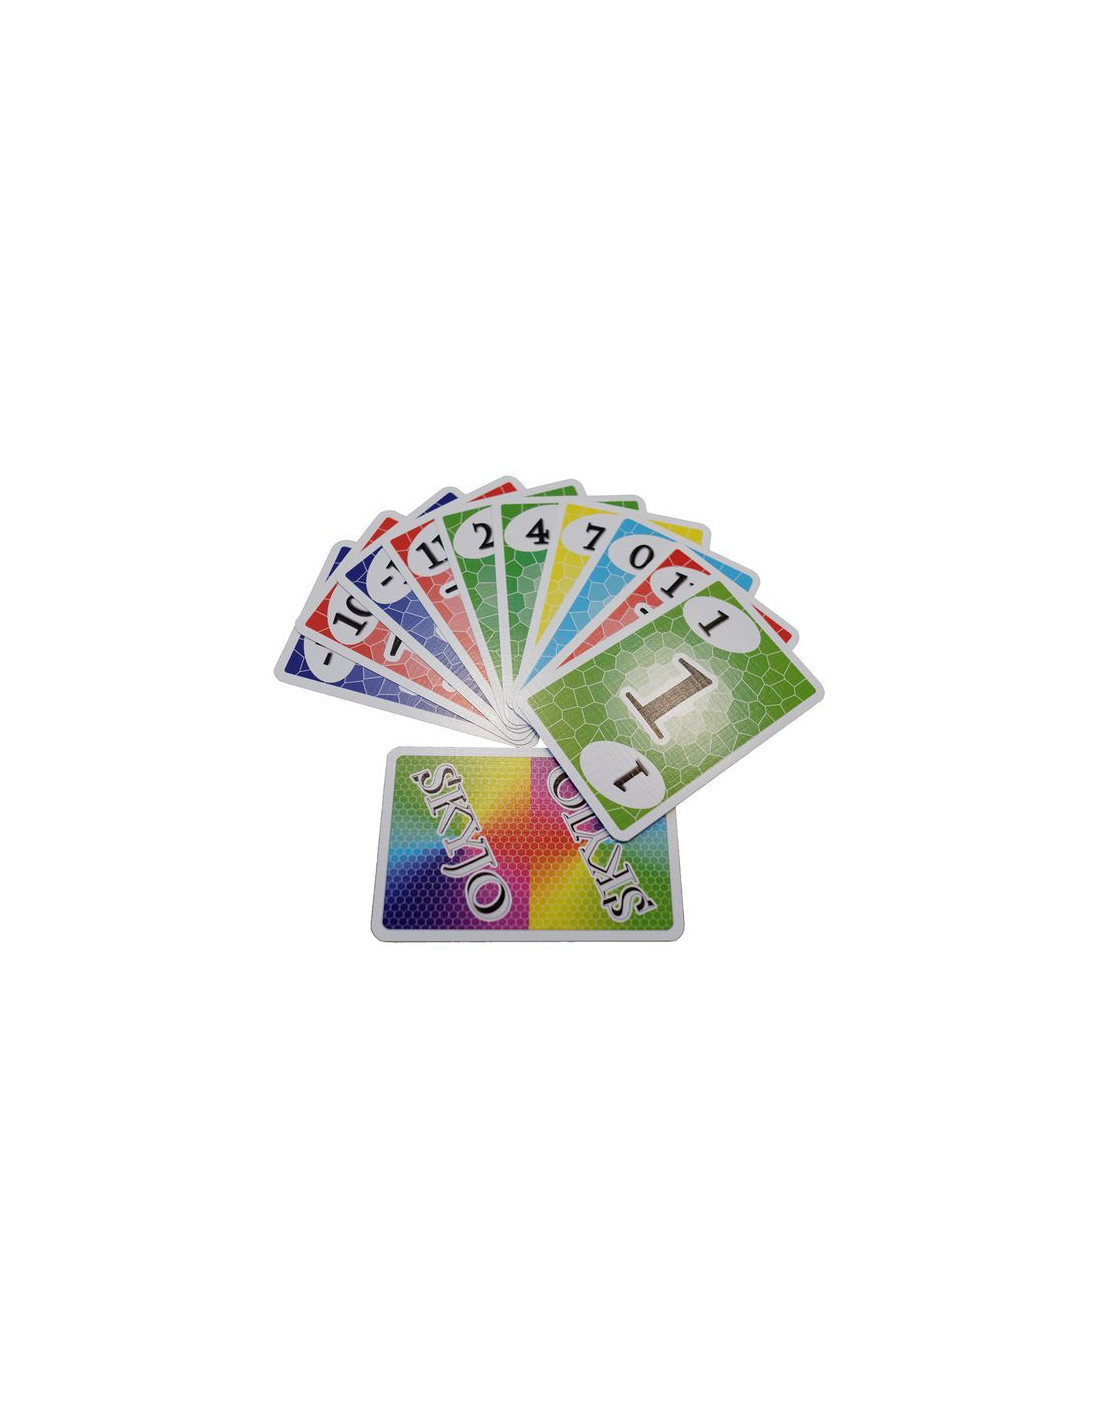 SKYJO – Un jeu de cartes simple, subtil et terriblement addictif !